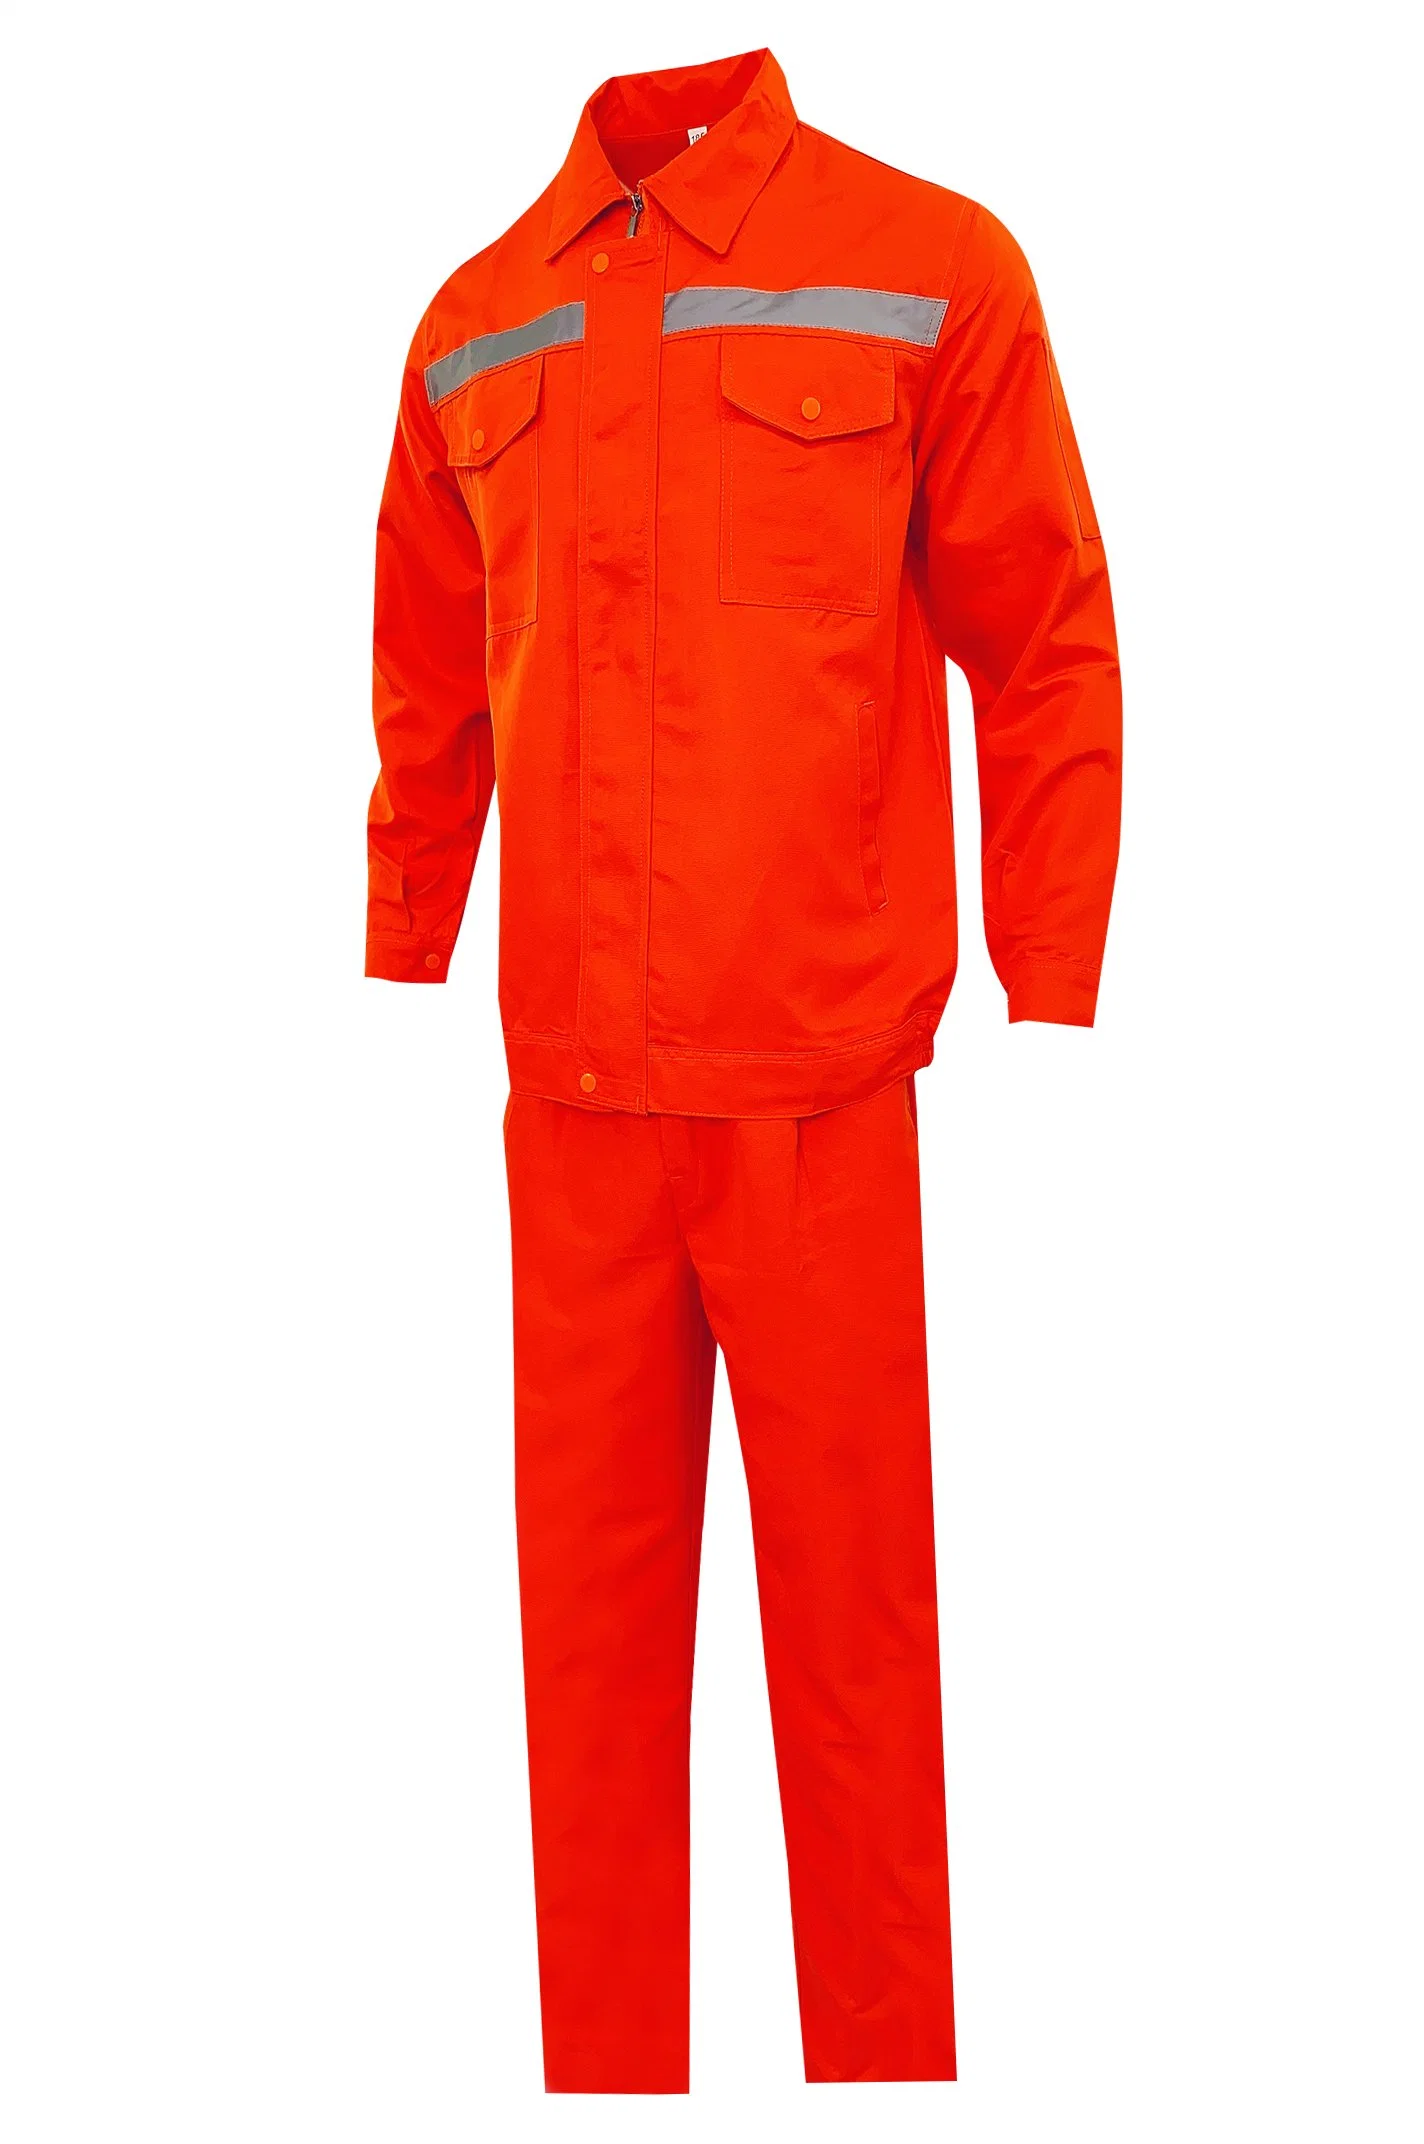 Prueba de fuego naranja RPET Aviador Don monos uniformes monos Ropa de trabajo de seguridad